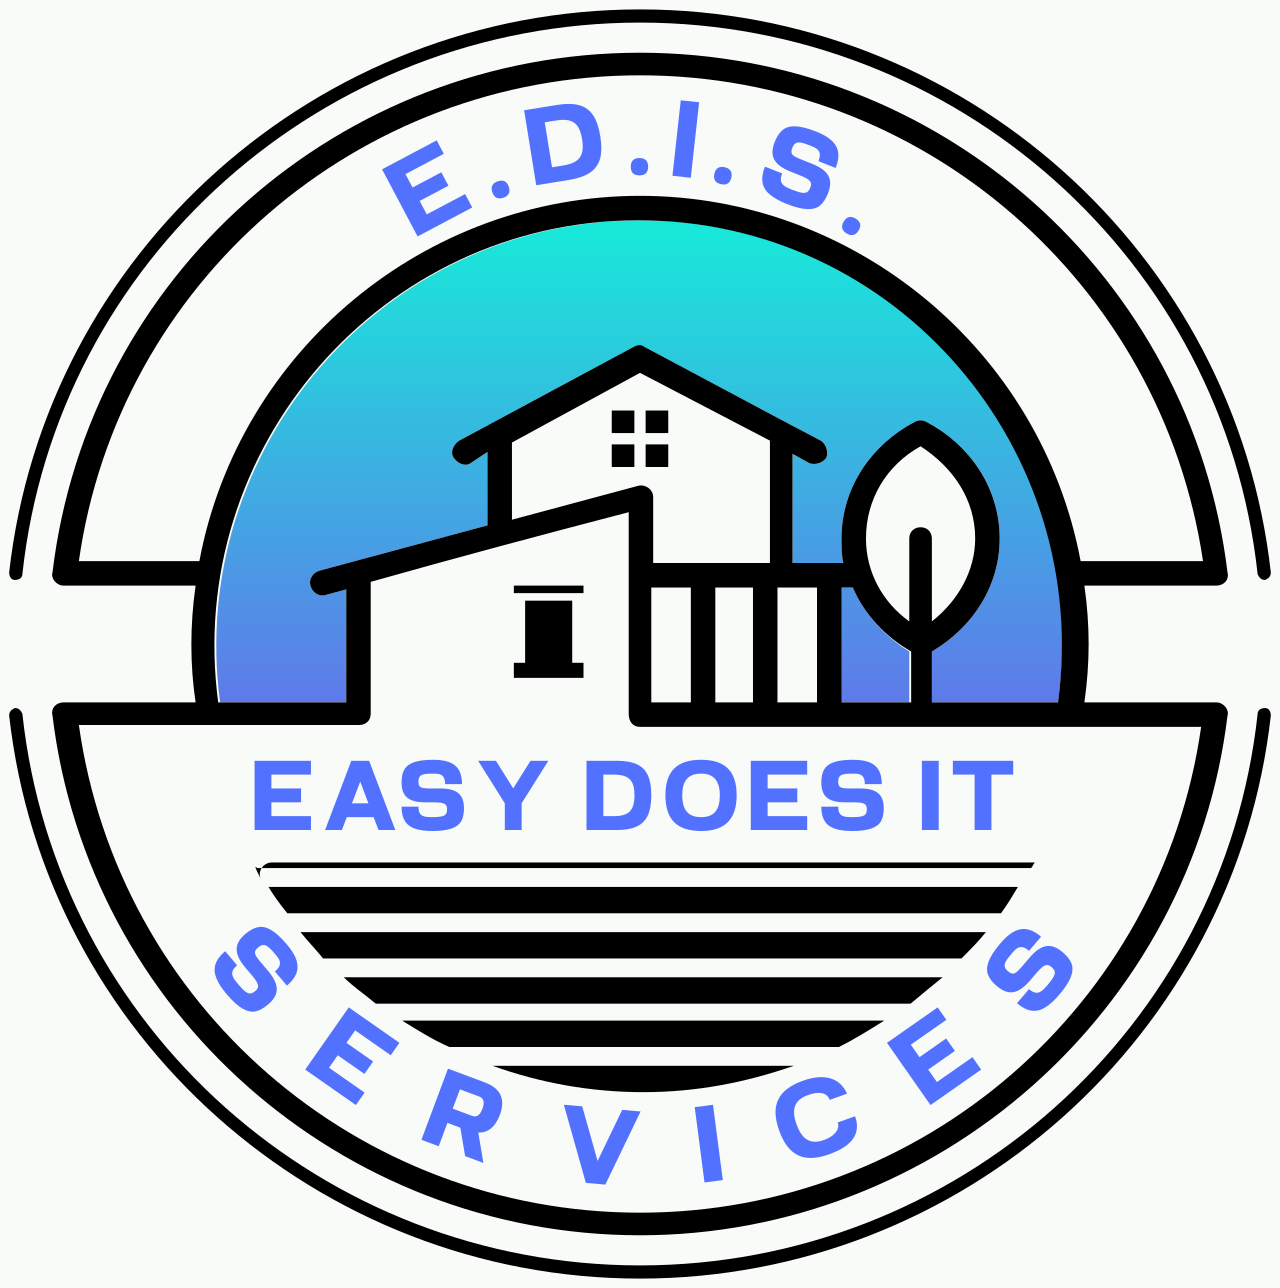 E.D.I.S.'s web page